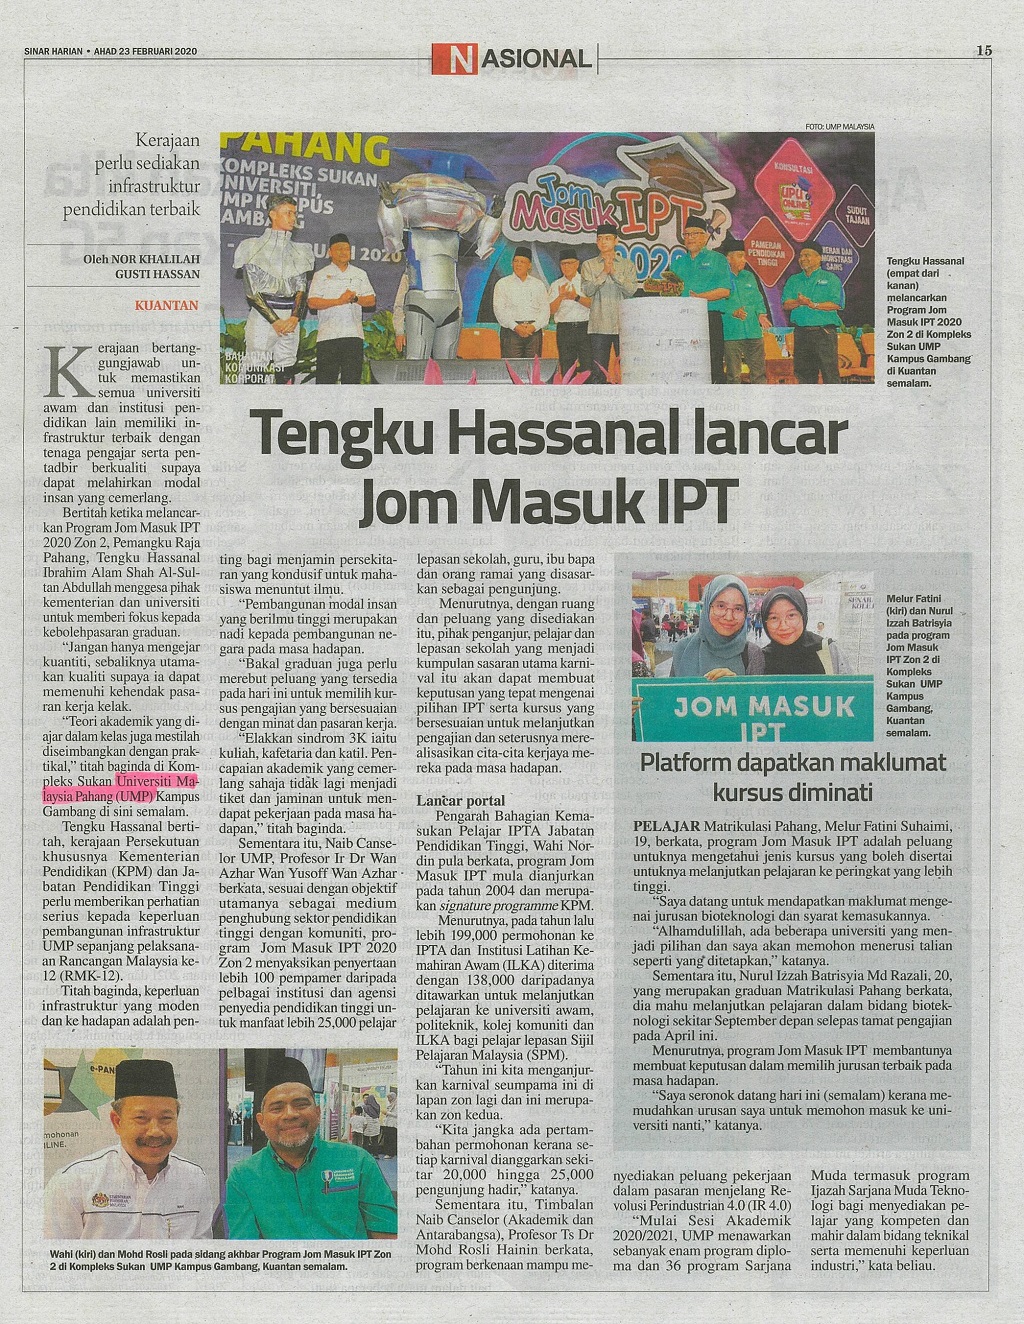 Tengku Hassanal lancar Jom Masuk IPT